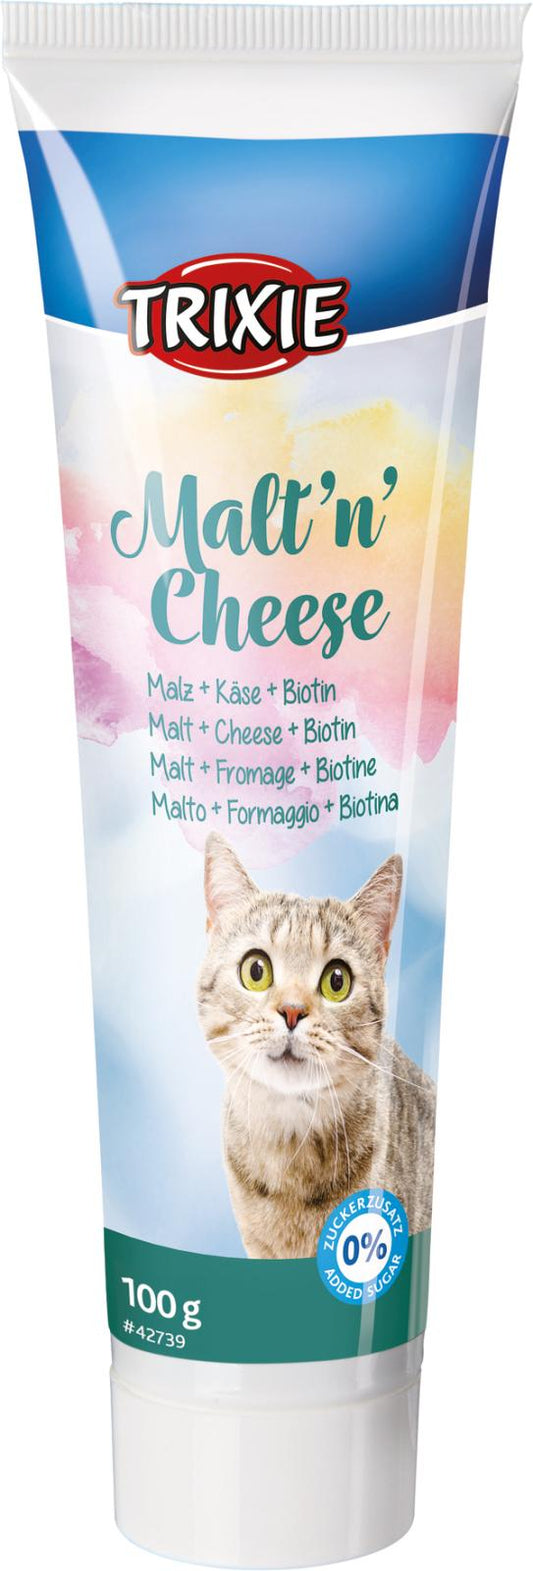 Maltn Cheese